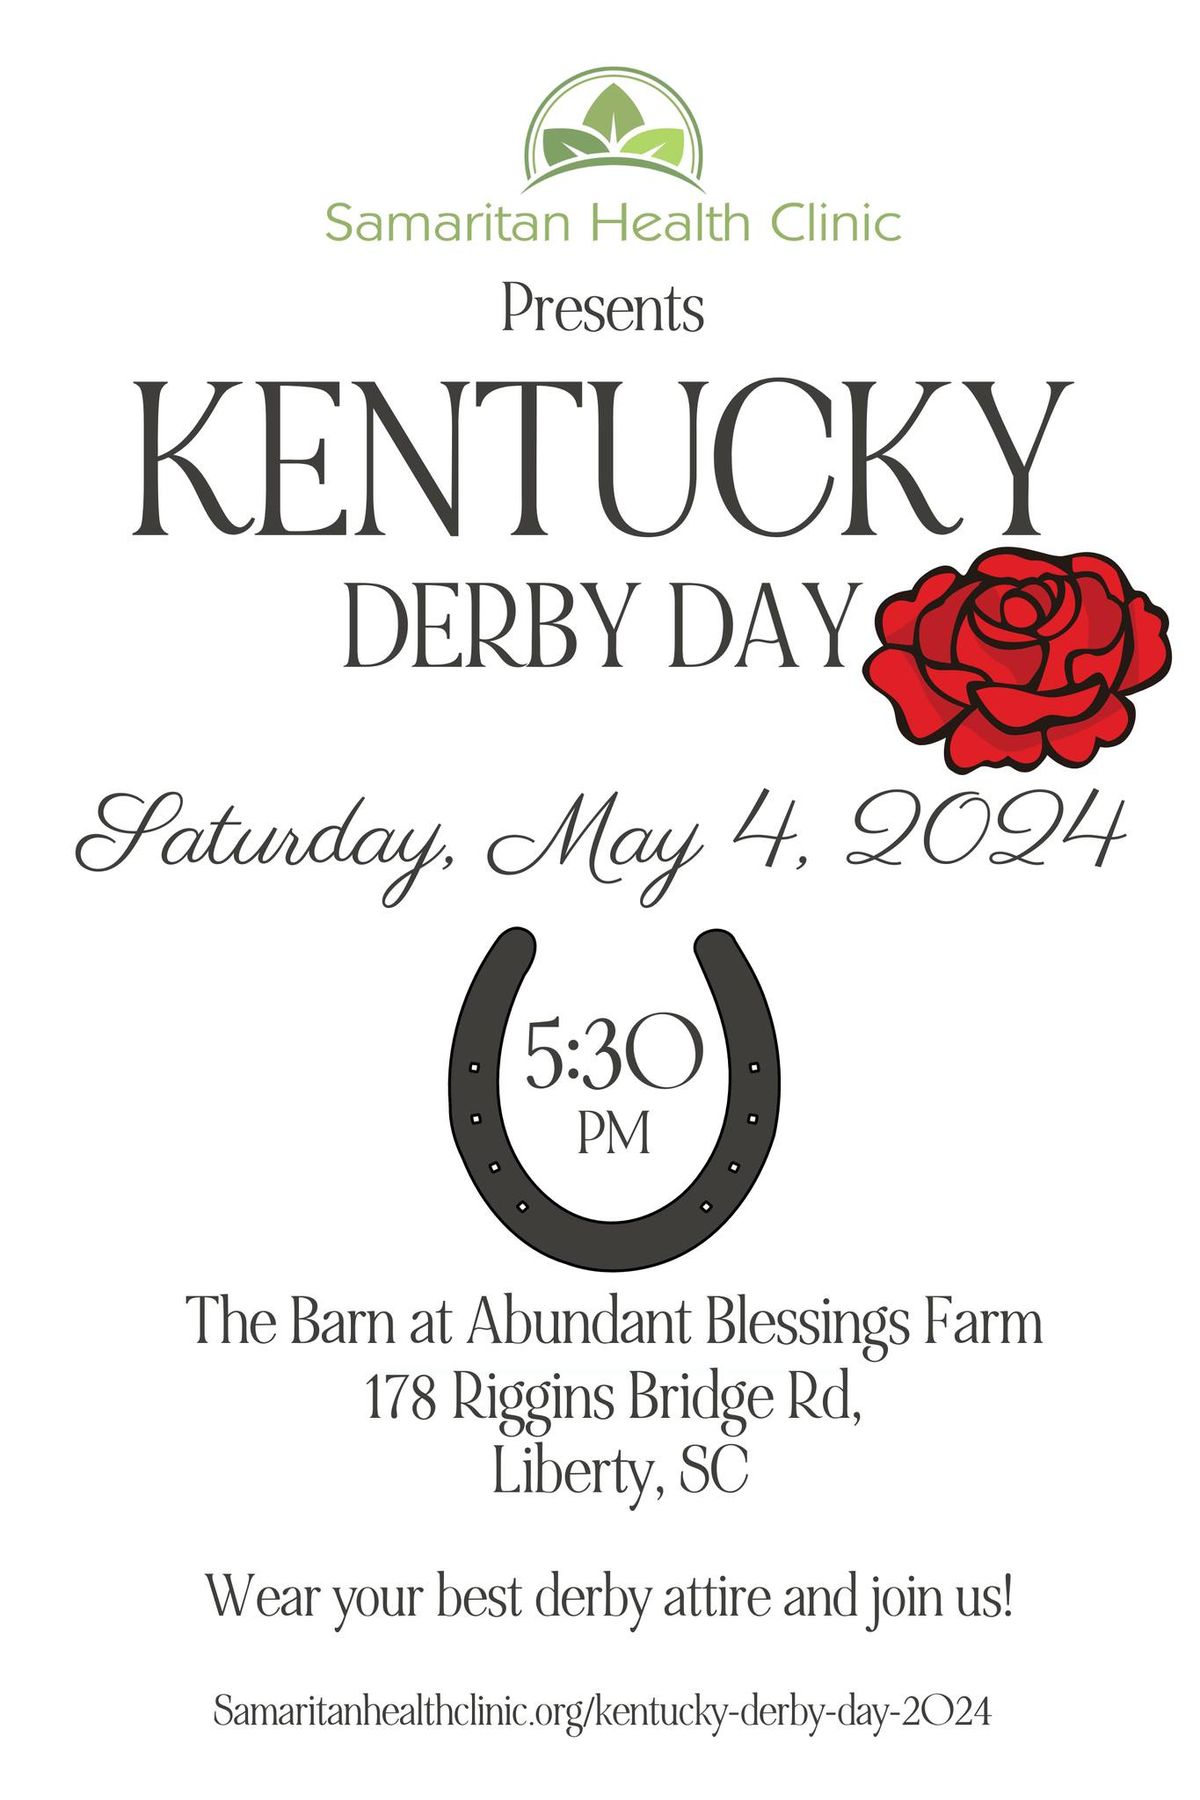 Kentucky Derby Day Samaritan Health Clinic 2024, The Barn at